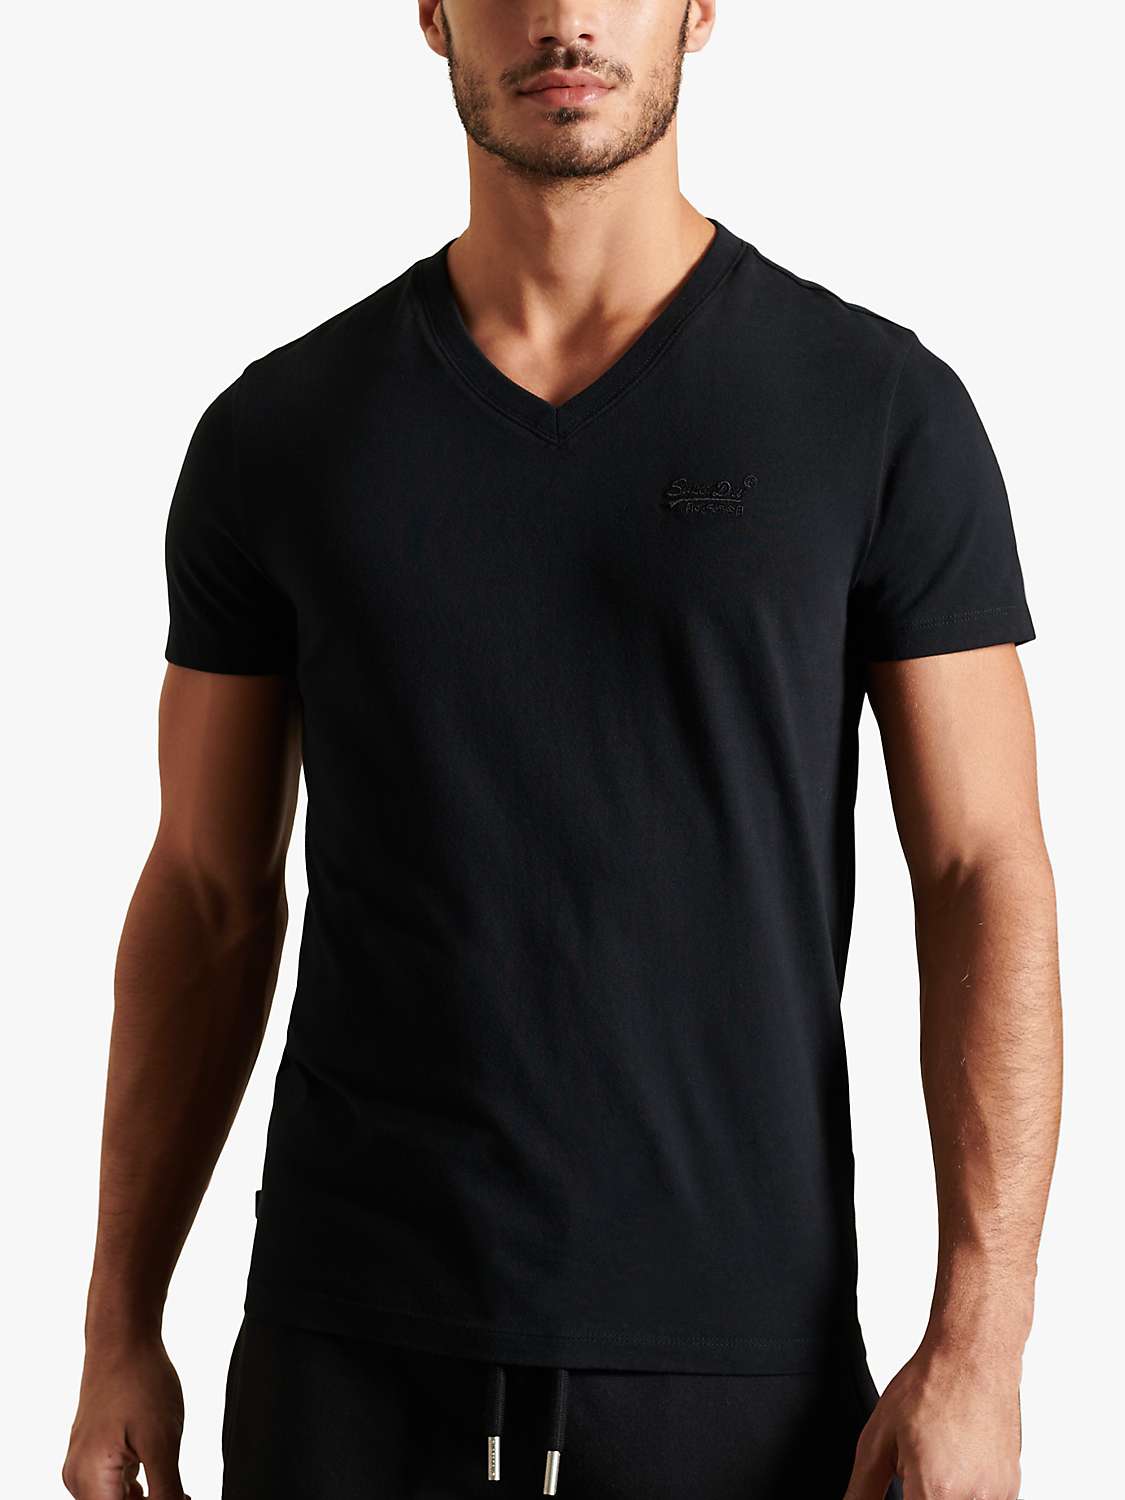 Buy Superdry Vintage V-Neck T-Shirt, Black Online at johnlewis.com